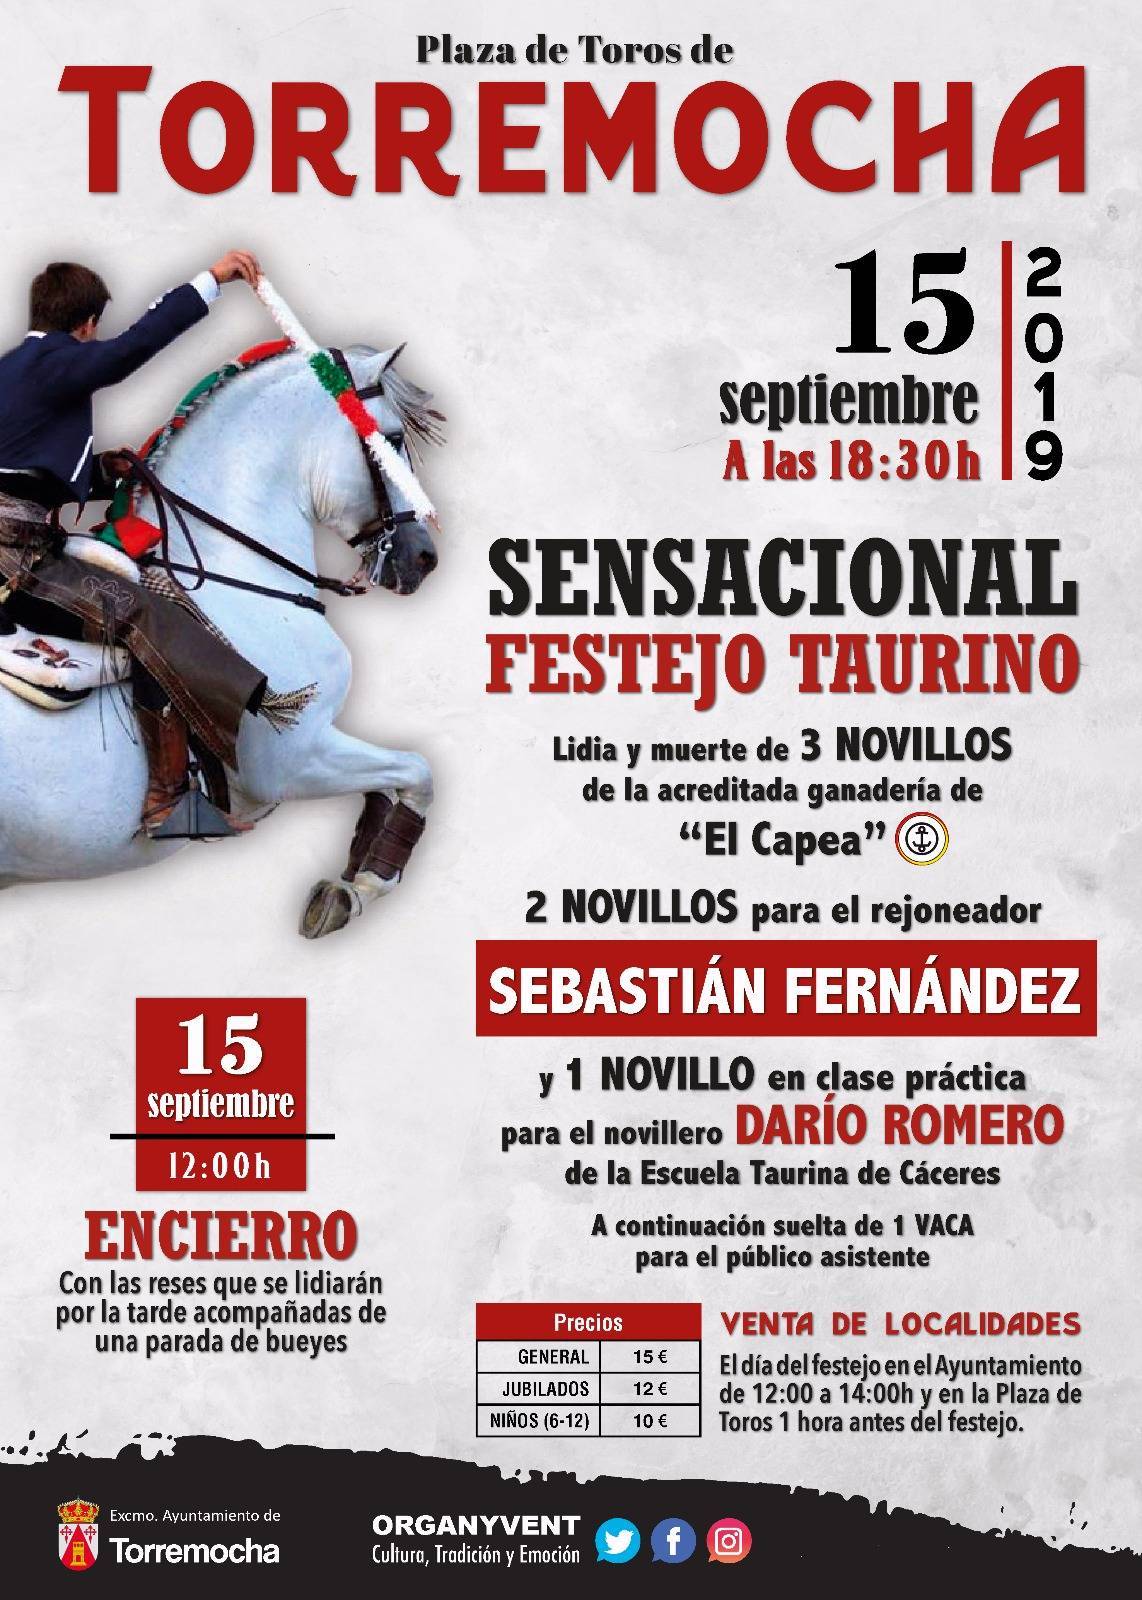 Sensacional festejo taurino 2019 - Torremocha (Cáceres)